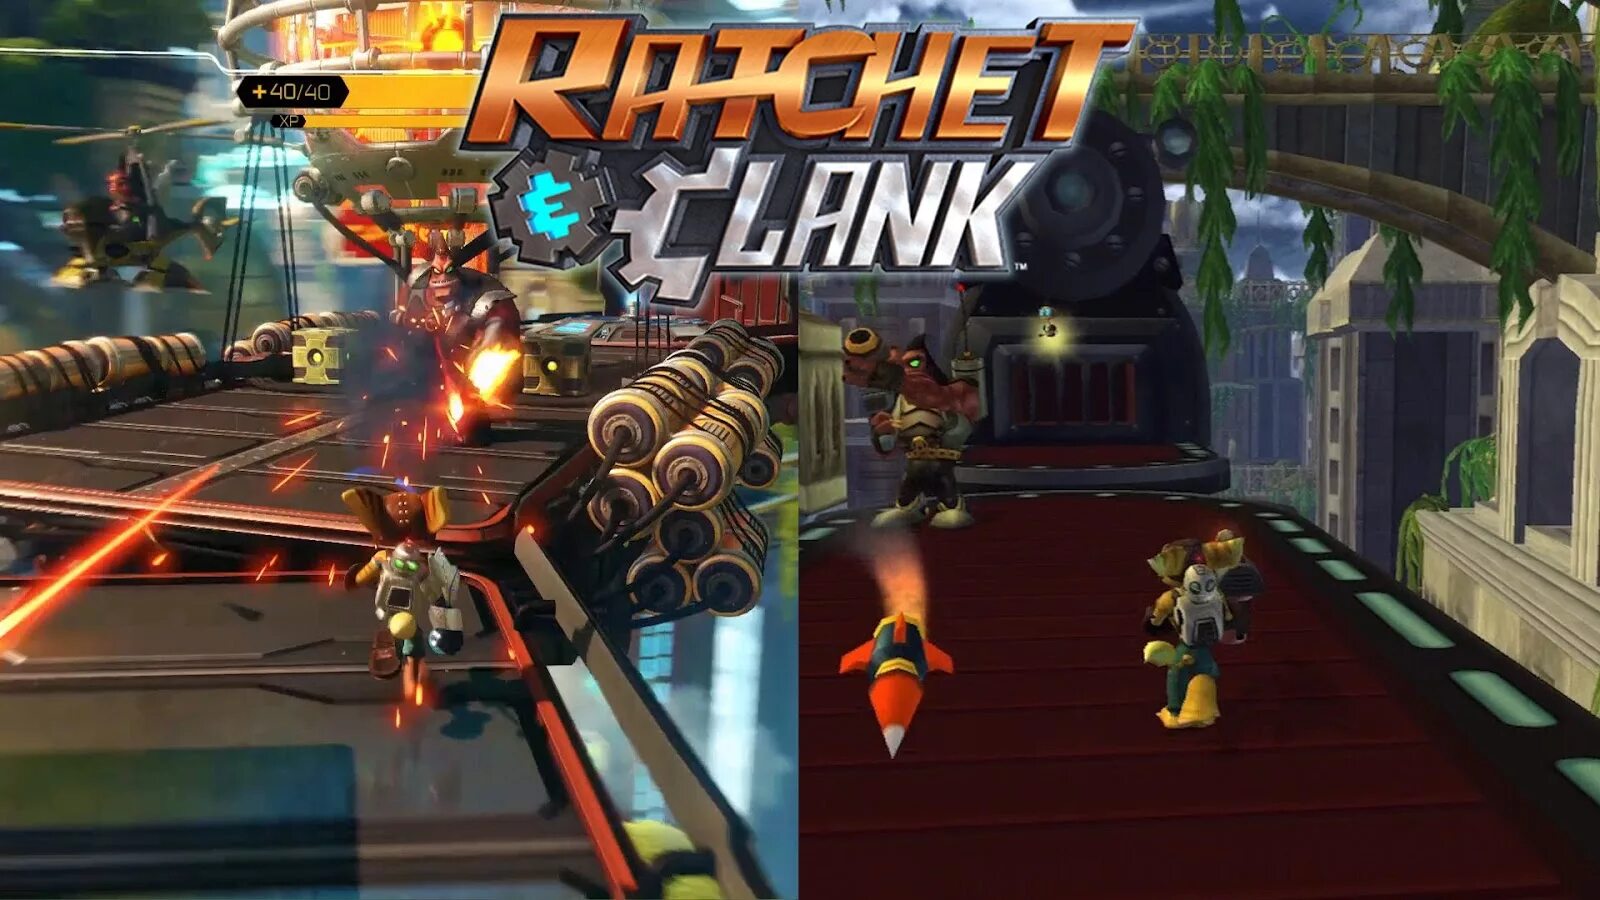 Cool games играть в игру. Ratchet & Clank (игра). Ratchet and Clank 2016. Ratchet & Clank (игра, 2016). Рэтчет энд Кланк геймплей.